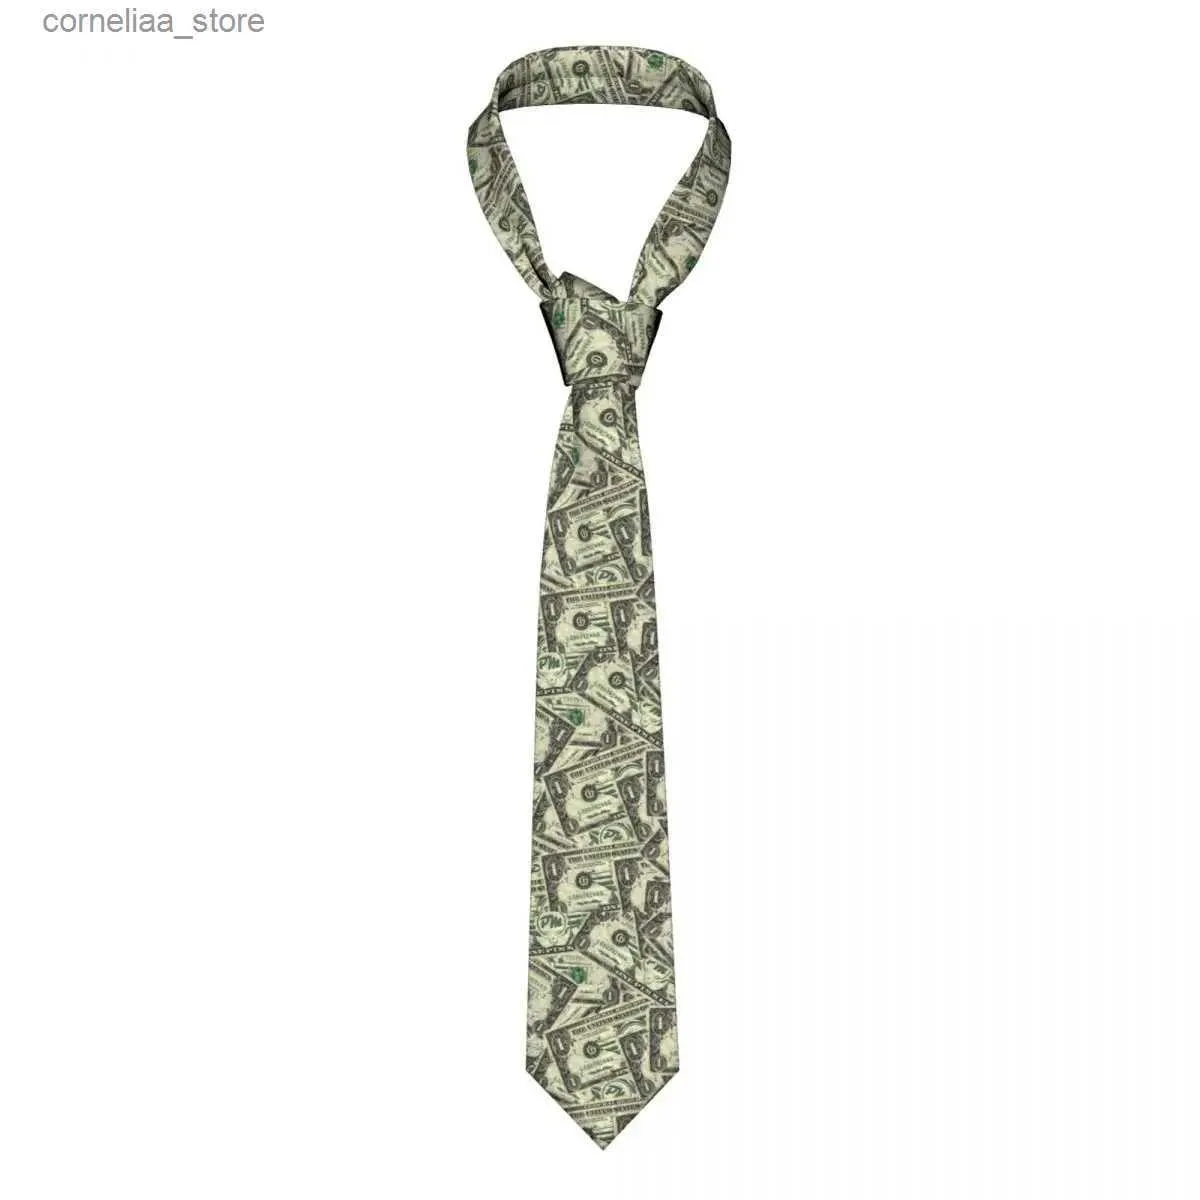 Gravatas de pescoço Gravatas de pescoço EUA dólar dinheiro homens gravatas skinny poliéster 8 cm gravata estreita para homens uso diário cravat cosplay adereços y240325